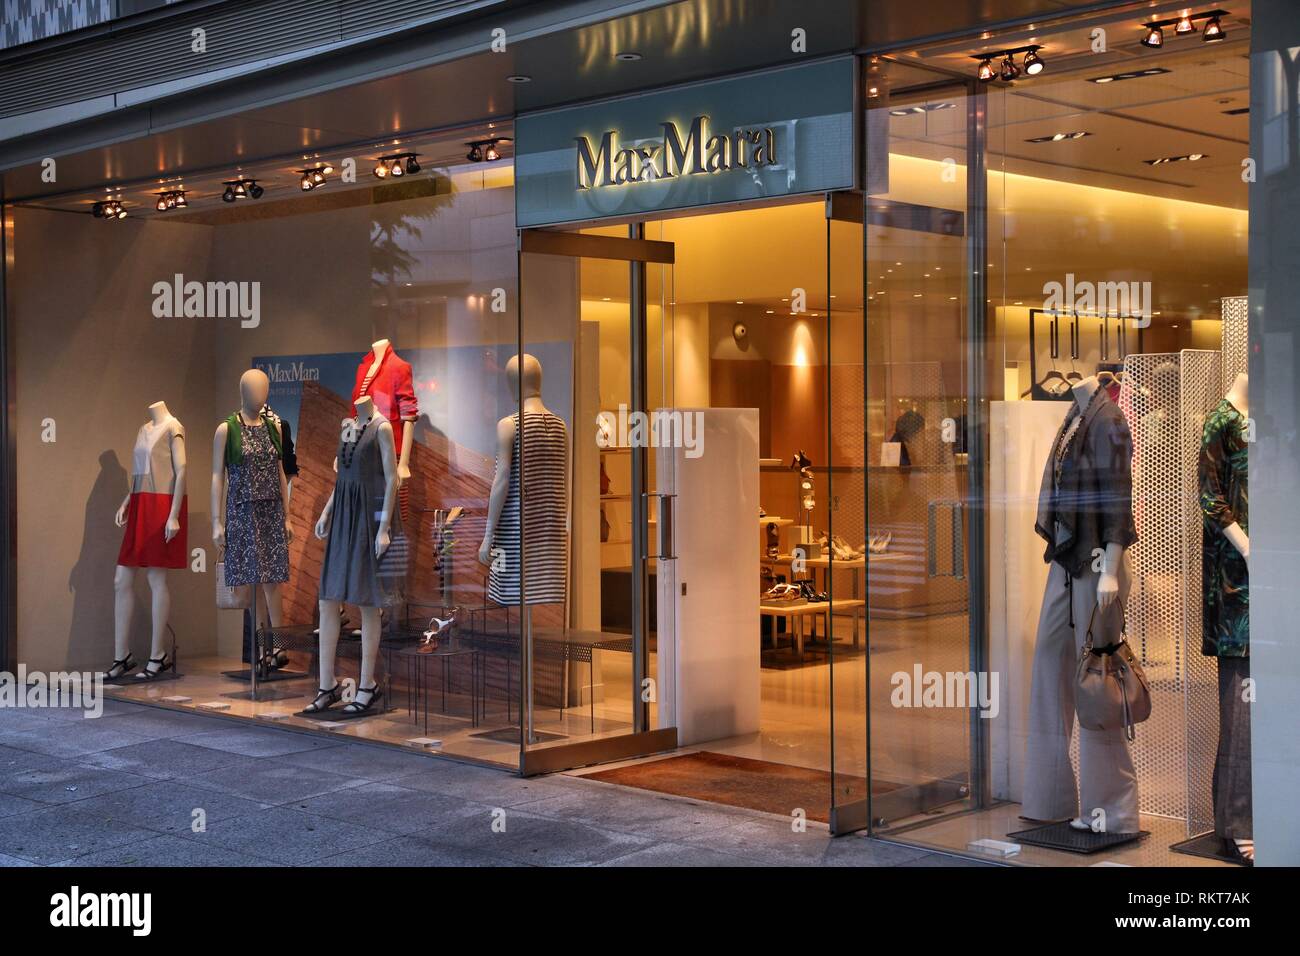 Max mara fashion group immagini e fotografie stock ad alta risoluzione -  Alamy